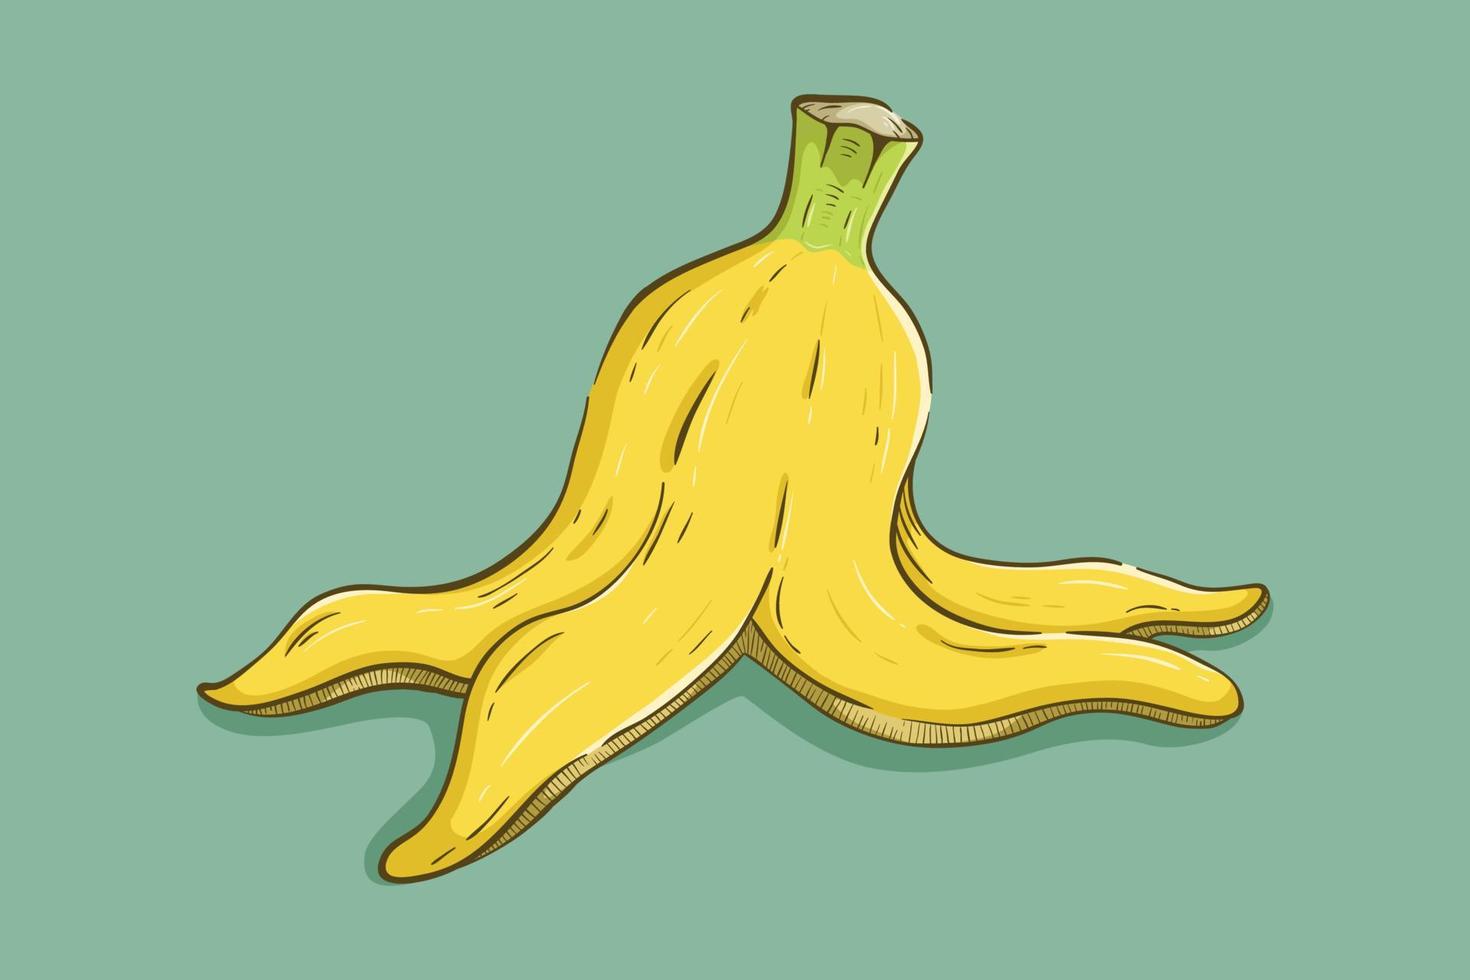 buccia di banana con disegnato a mano colorato o stile schizzo vettore